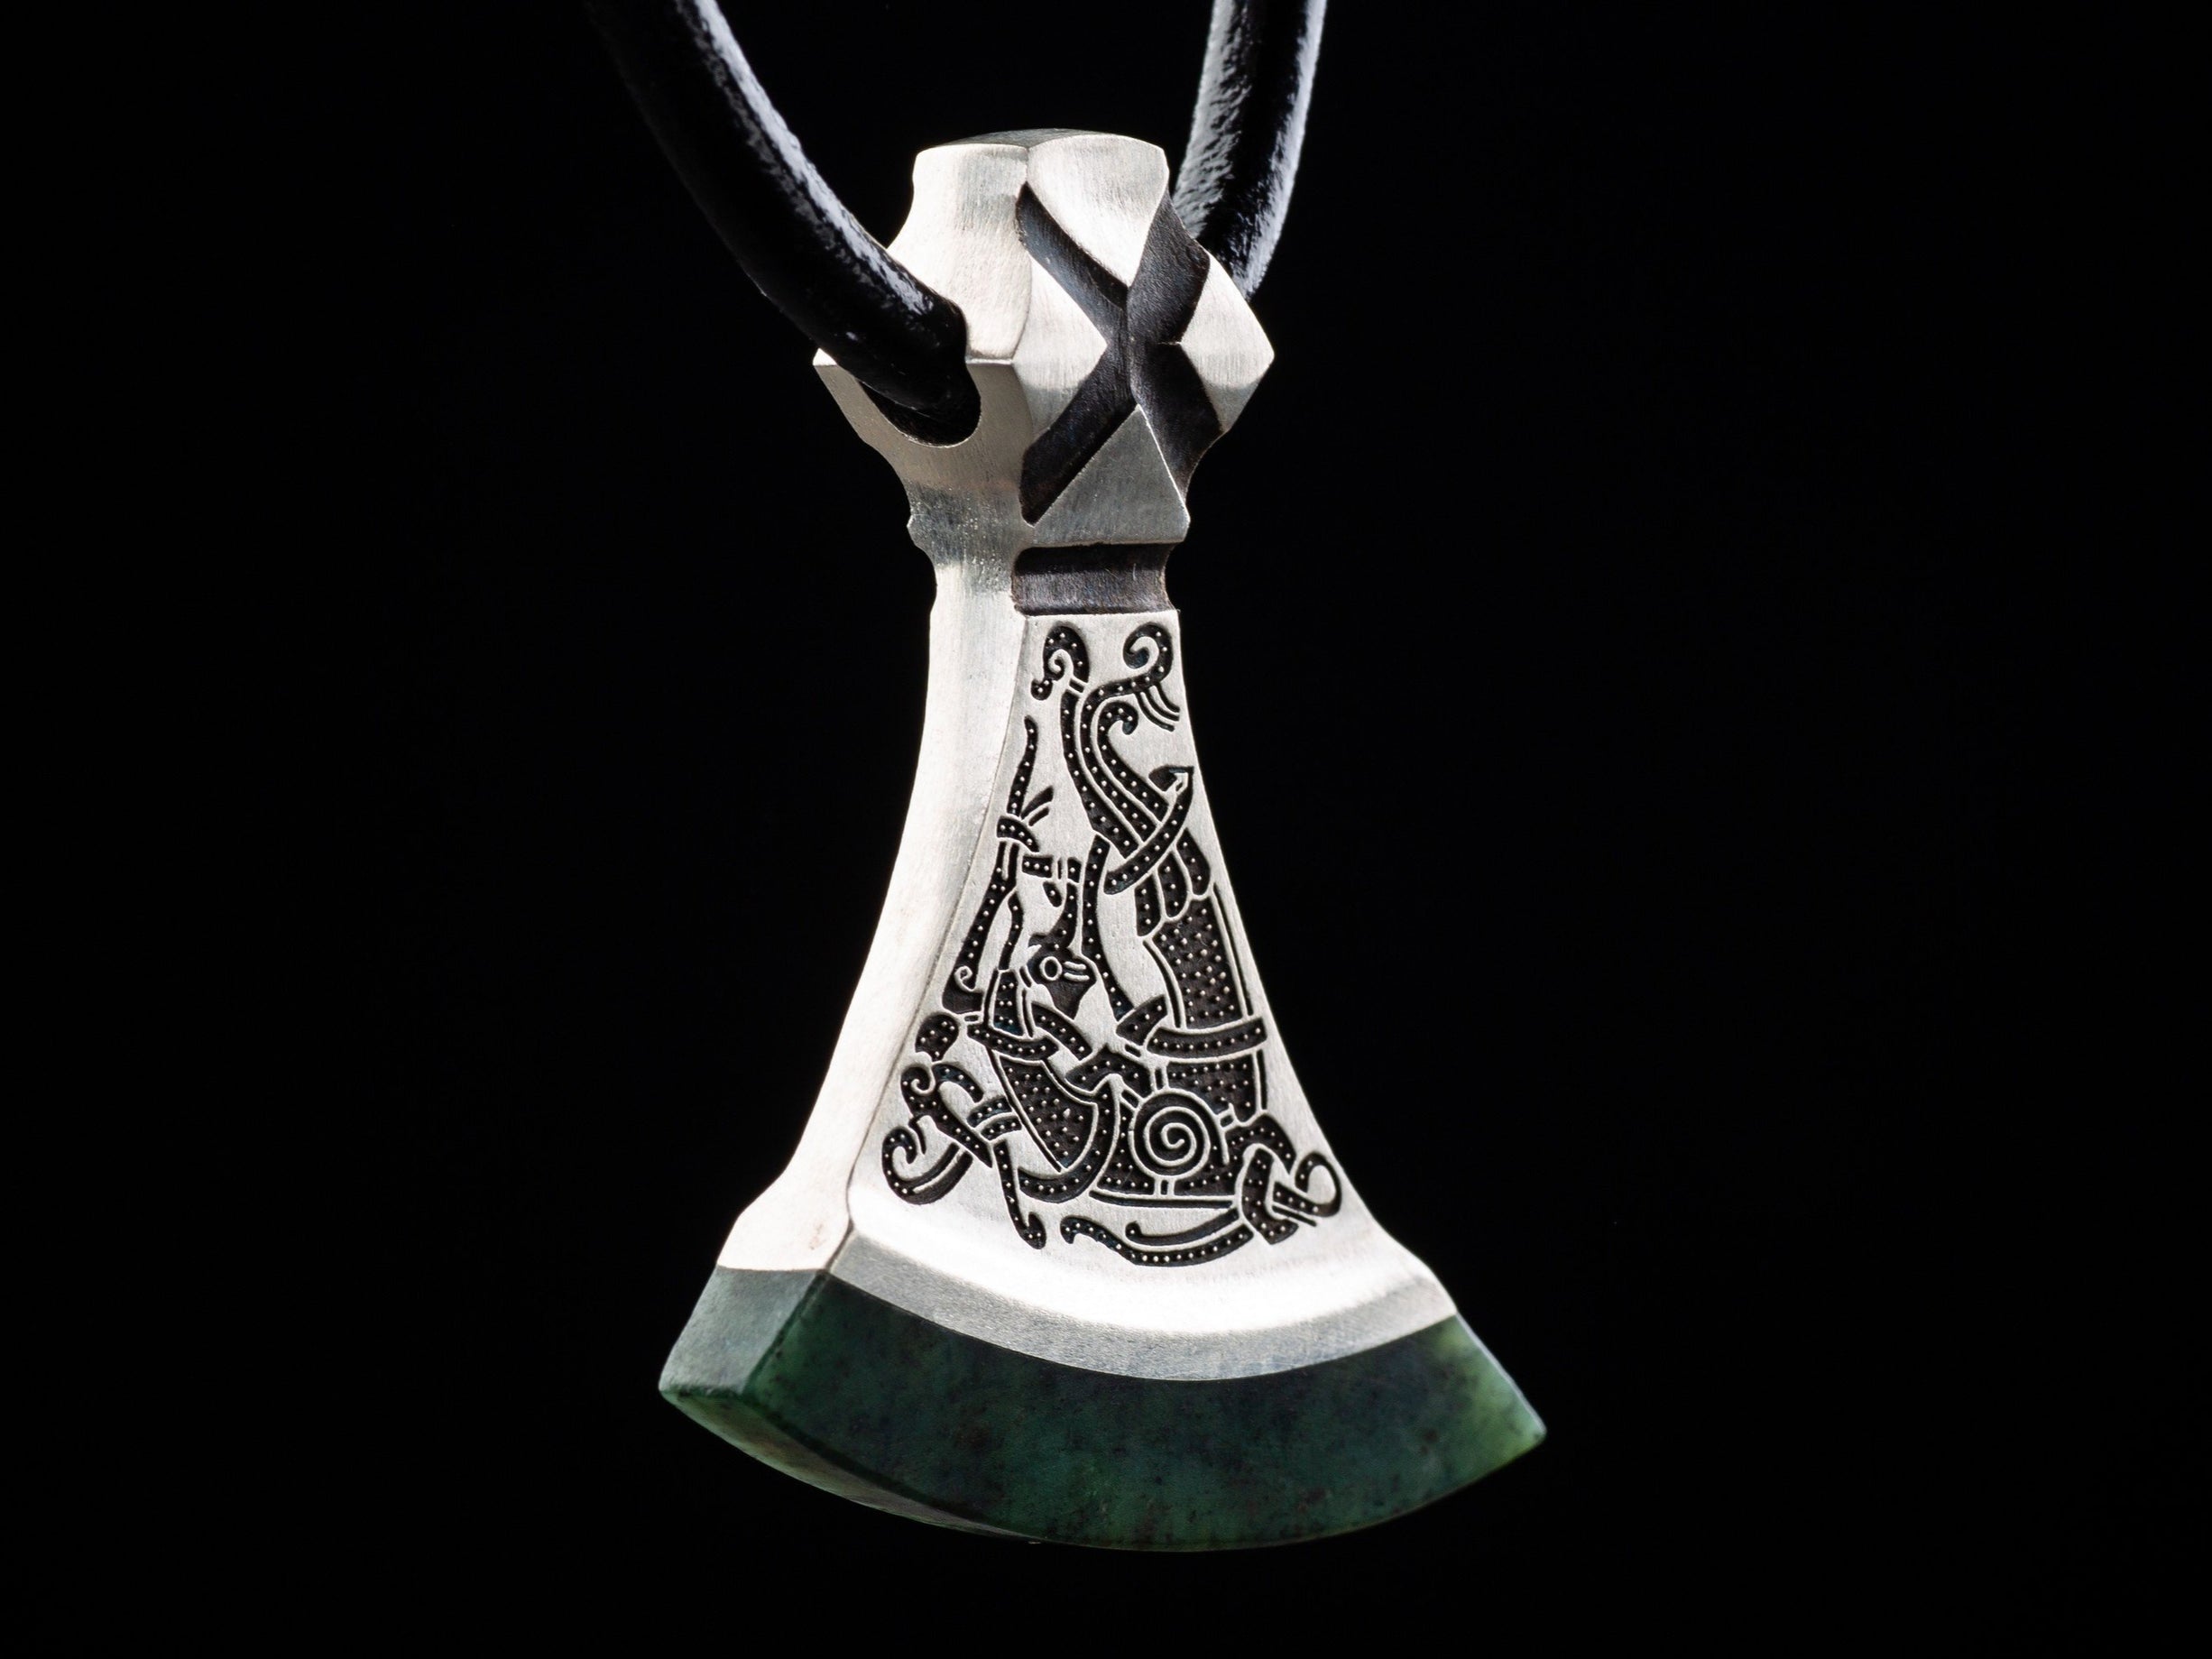 bird ornament on a silver axe